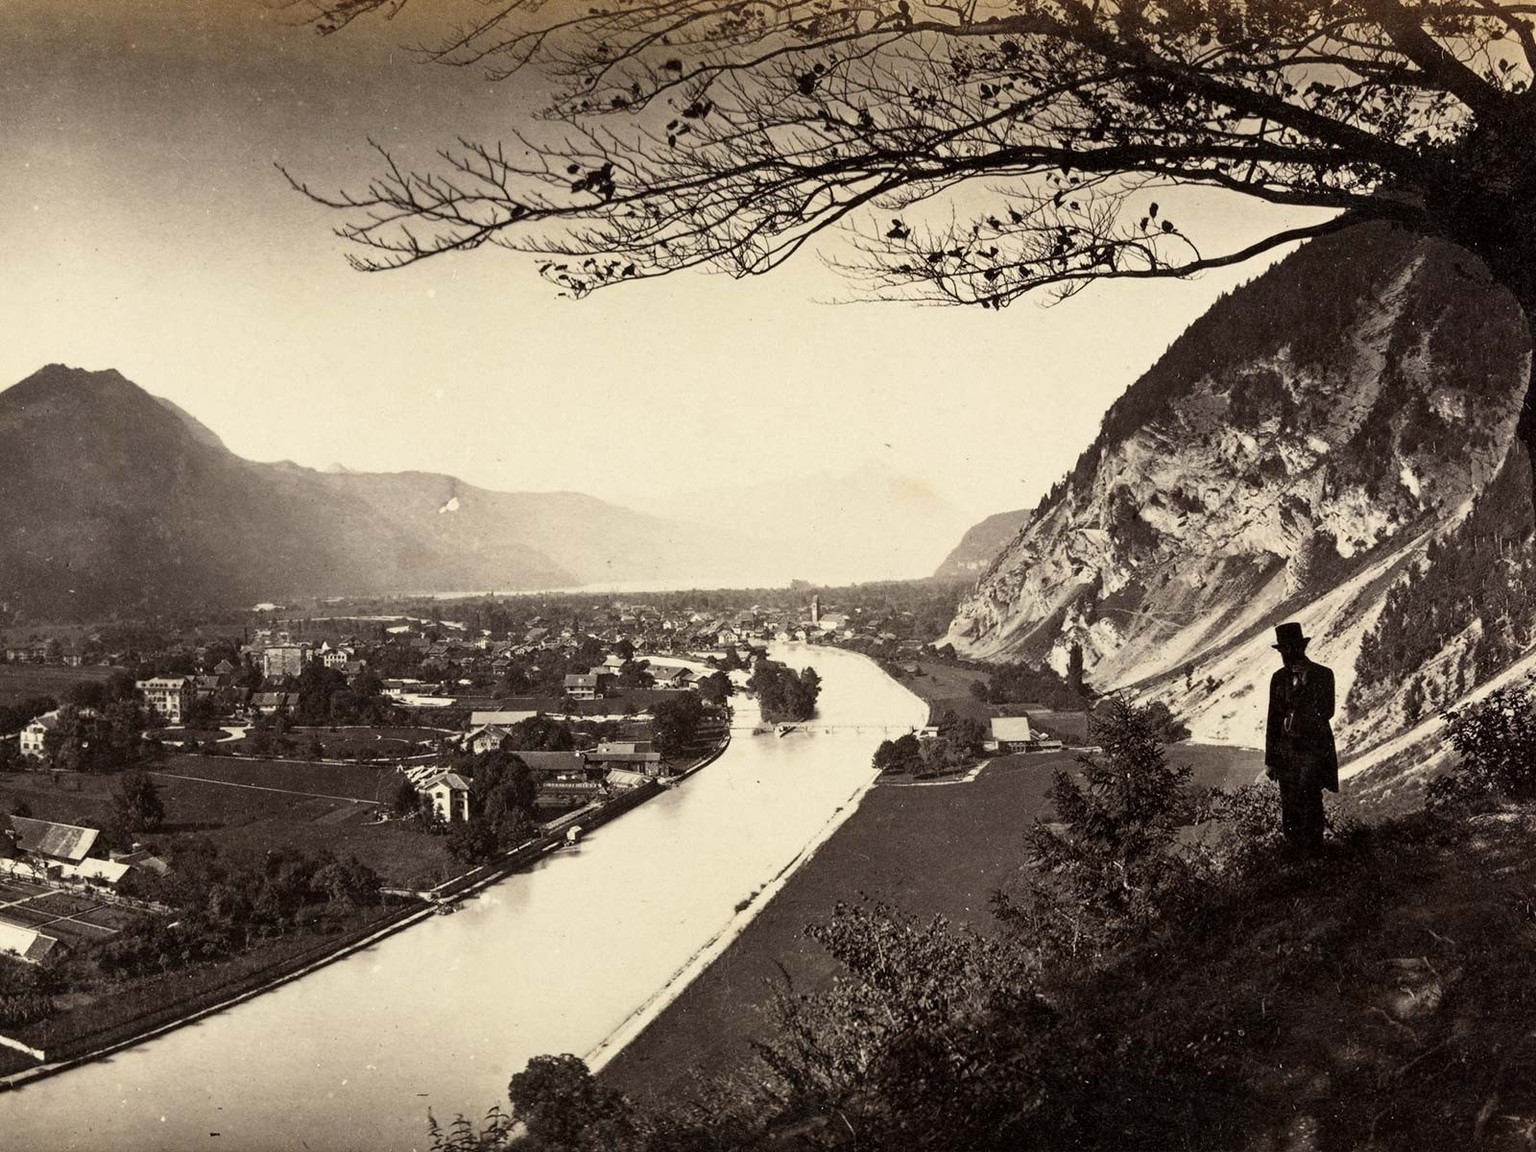 Ein Blick aus den 1860er-Jahren auf den Ort Aarmühle (links der Aare) – besser bekannt als Interlaken.
http://doi.org/10.3932/ethz-a-000250364